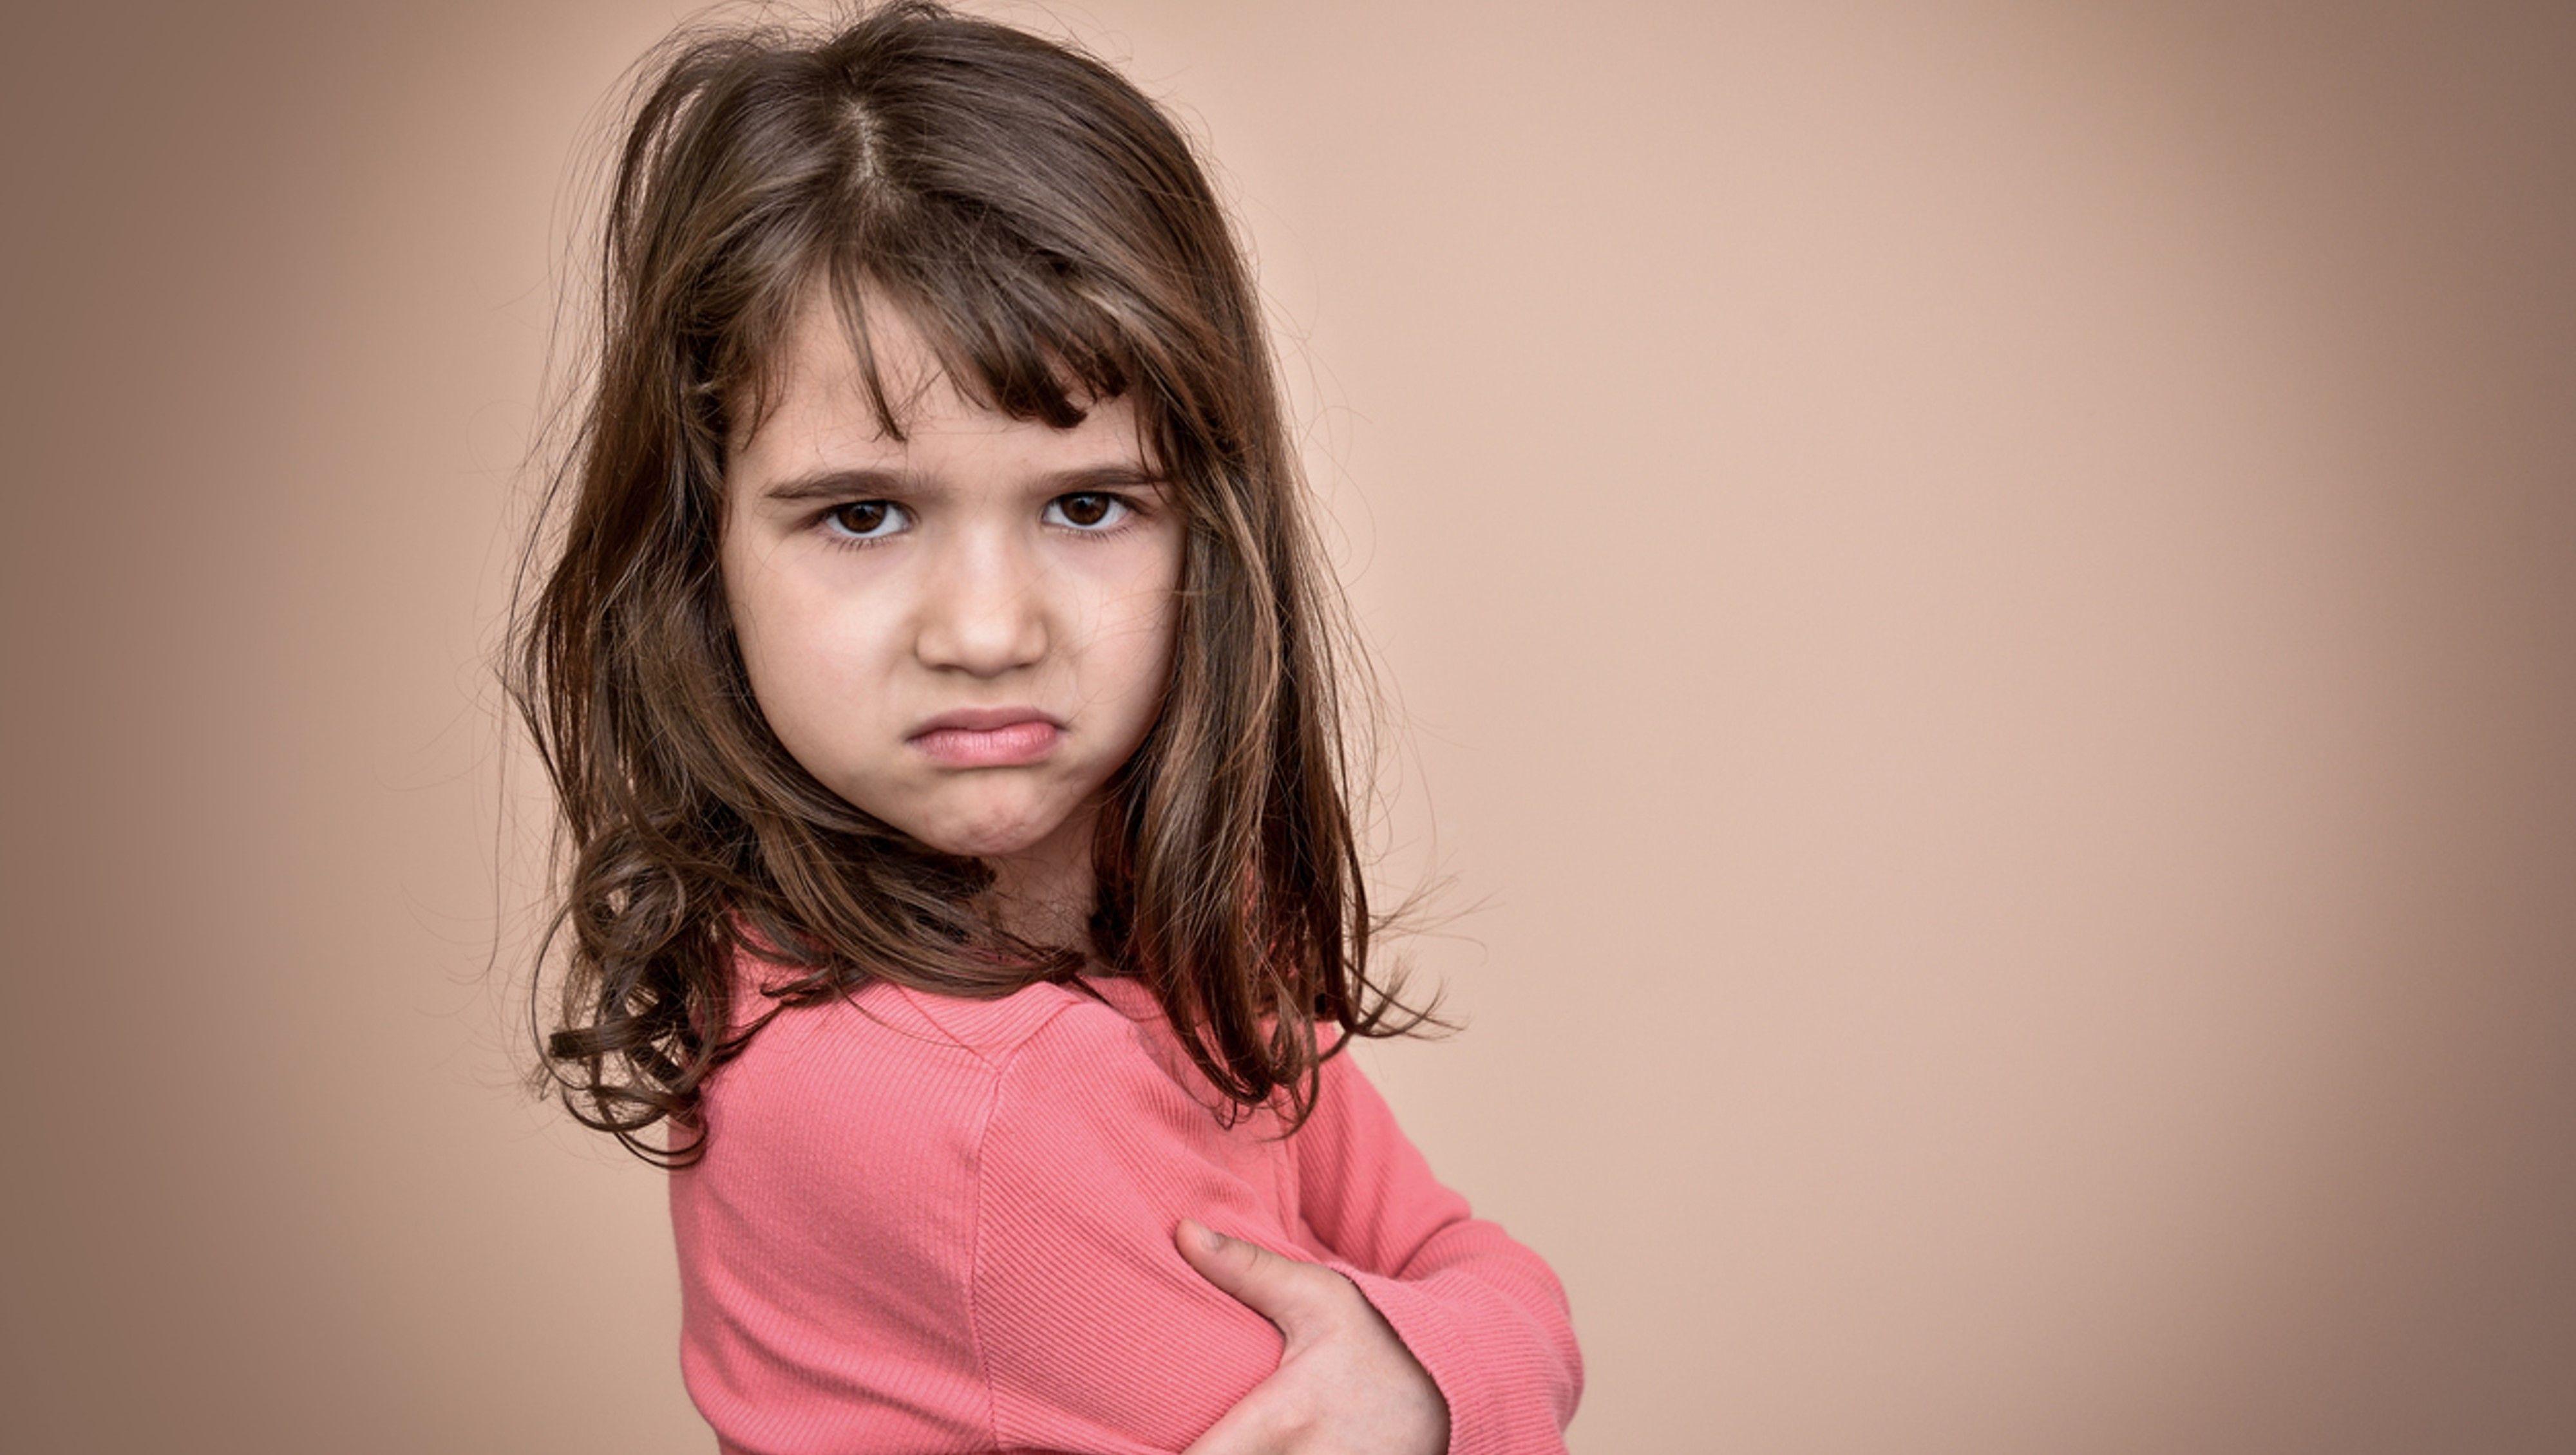 婚姻家庭治疗师:家里有个愤怒的小孩,该怎么办? 